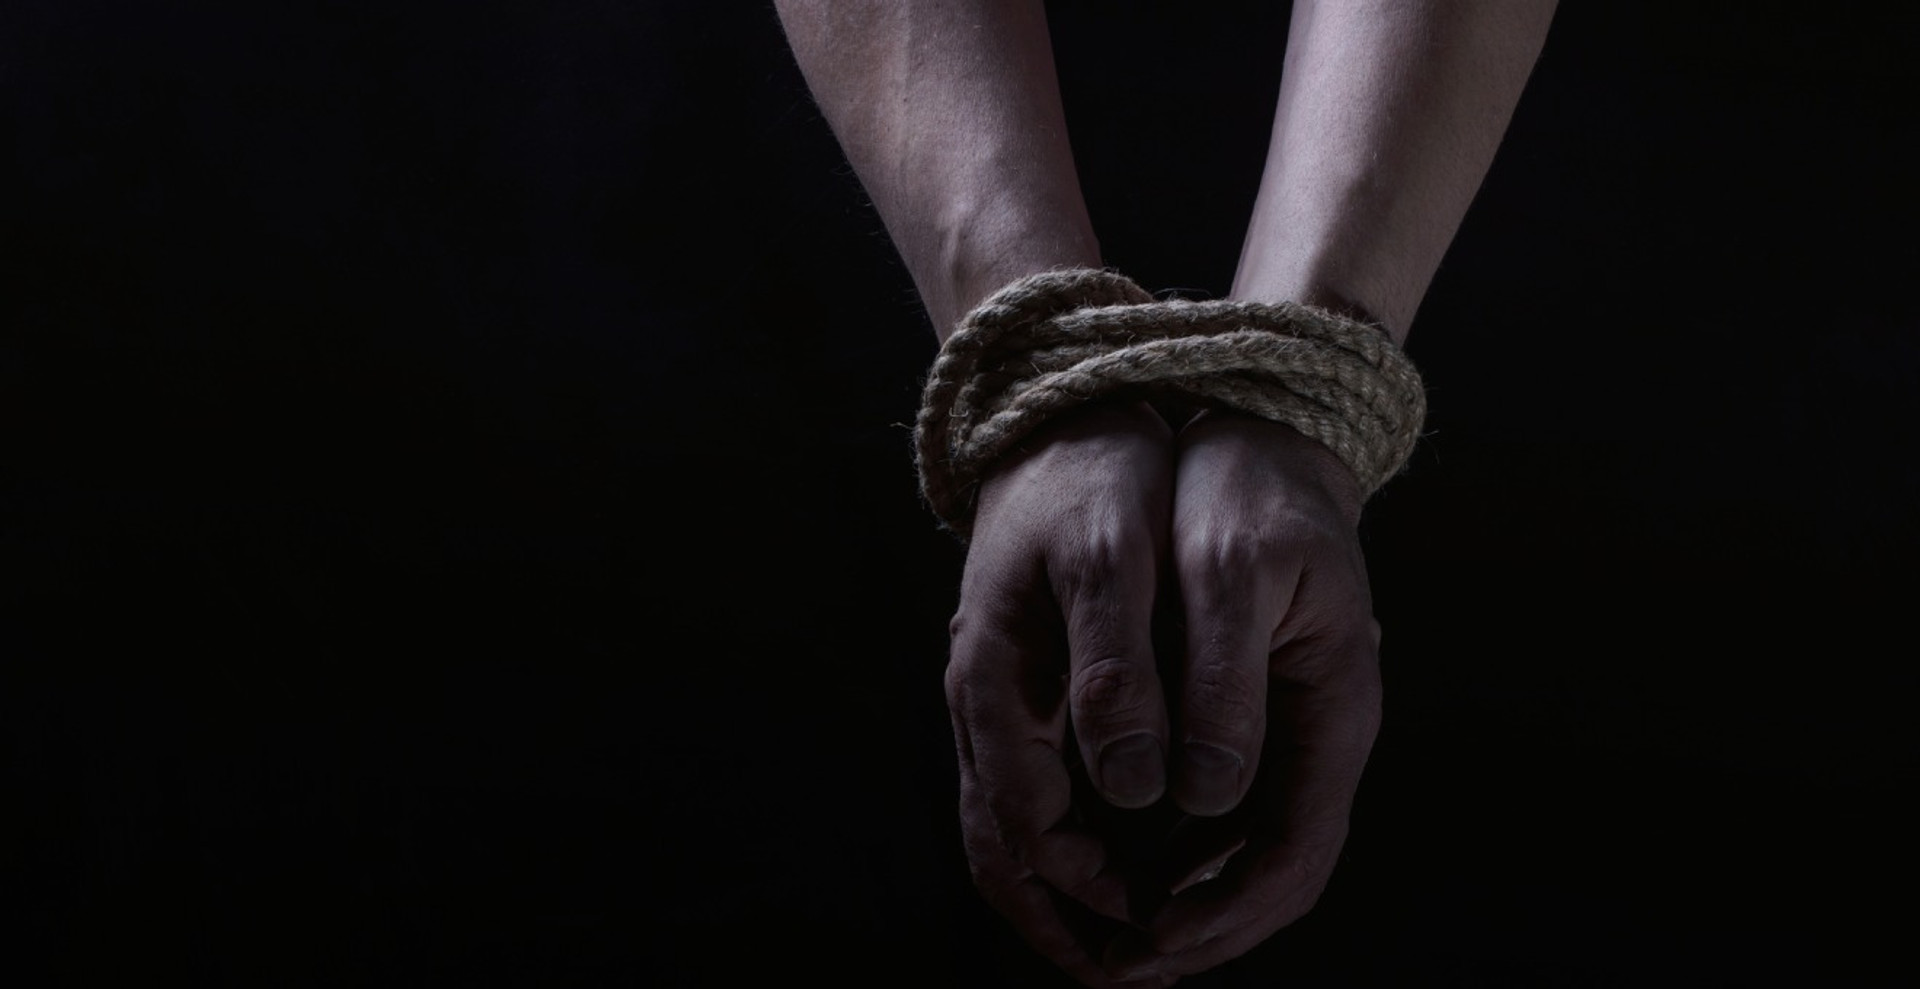 П'ять правил, як убезпечити себе від торгівлі людьми